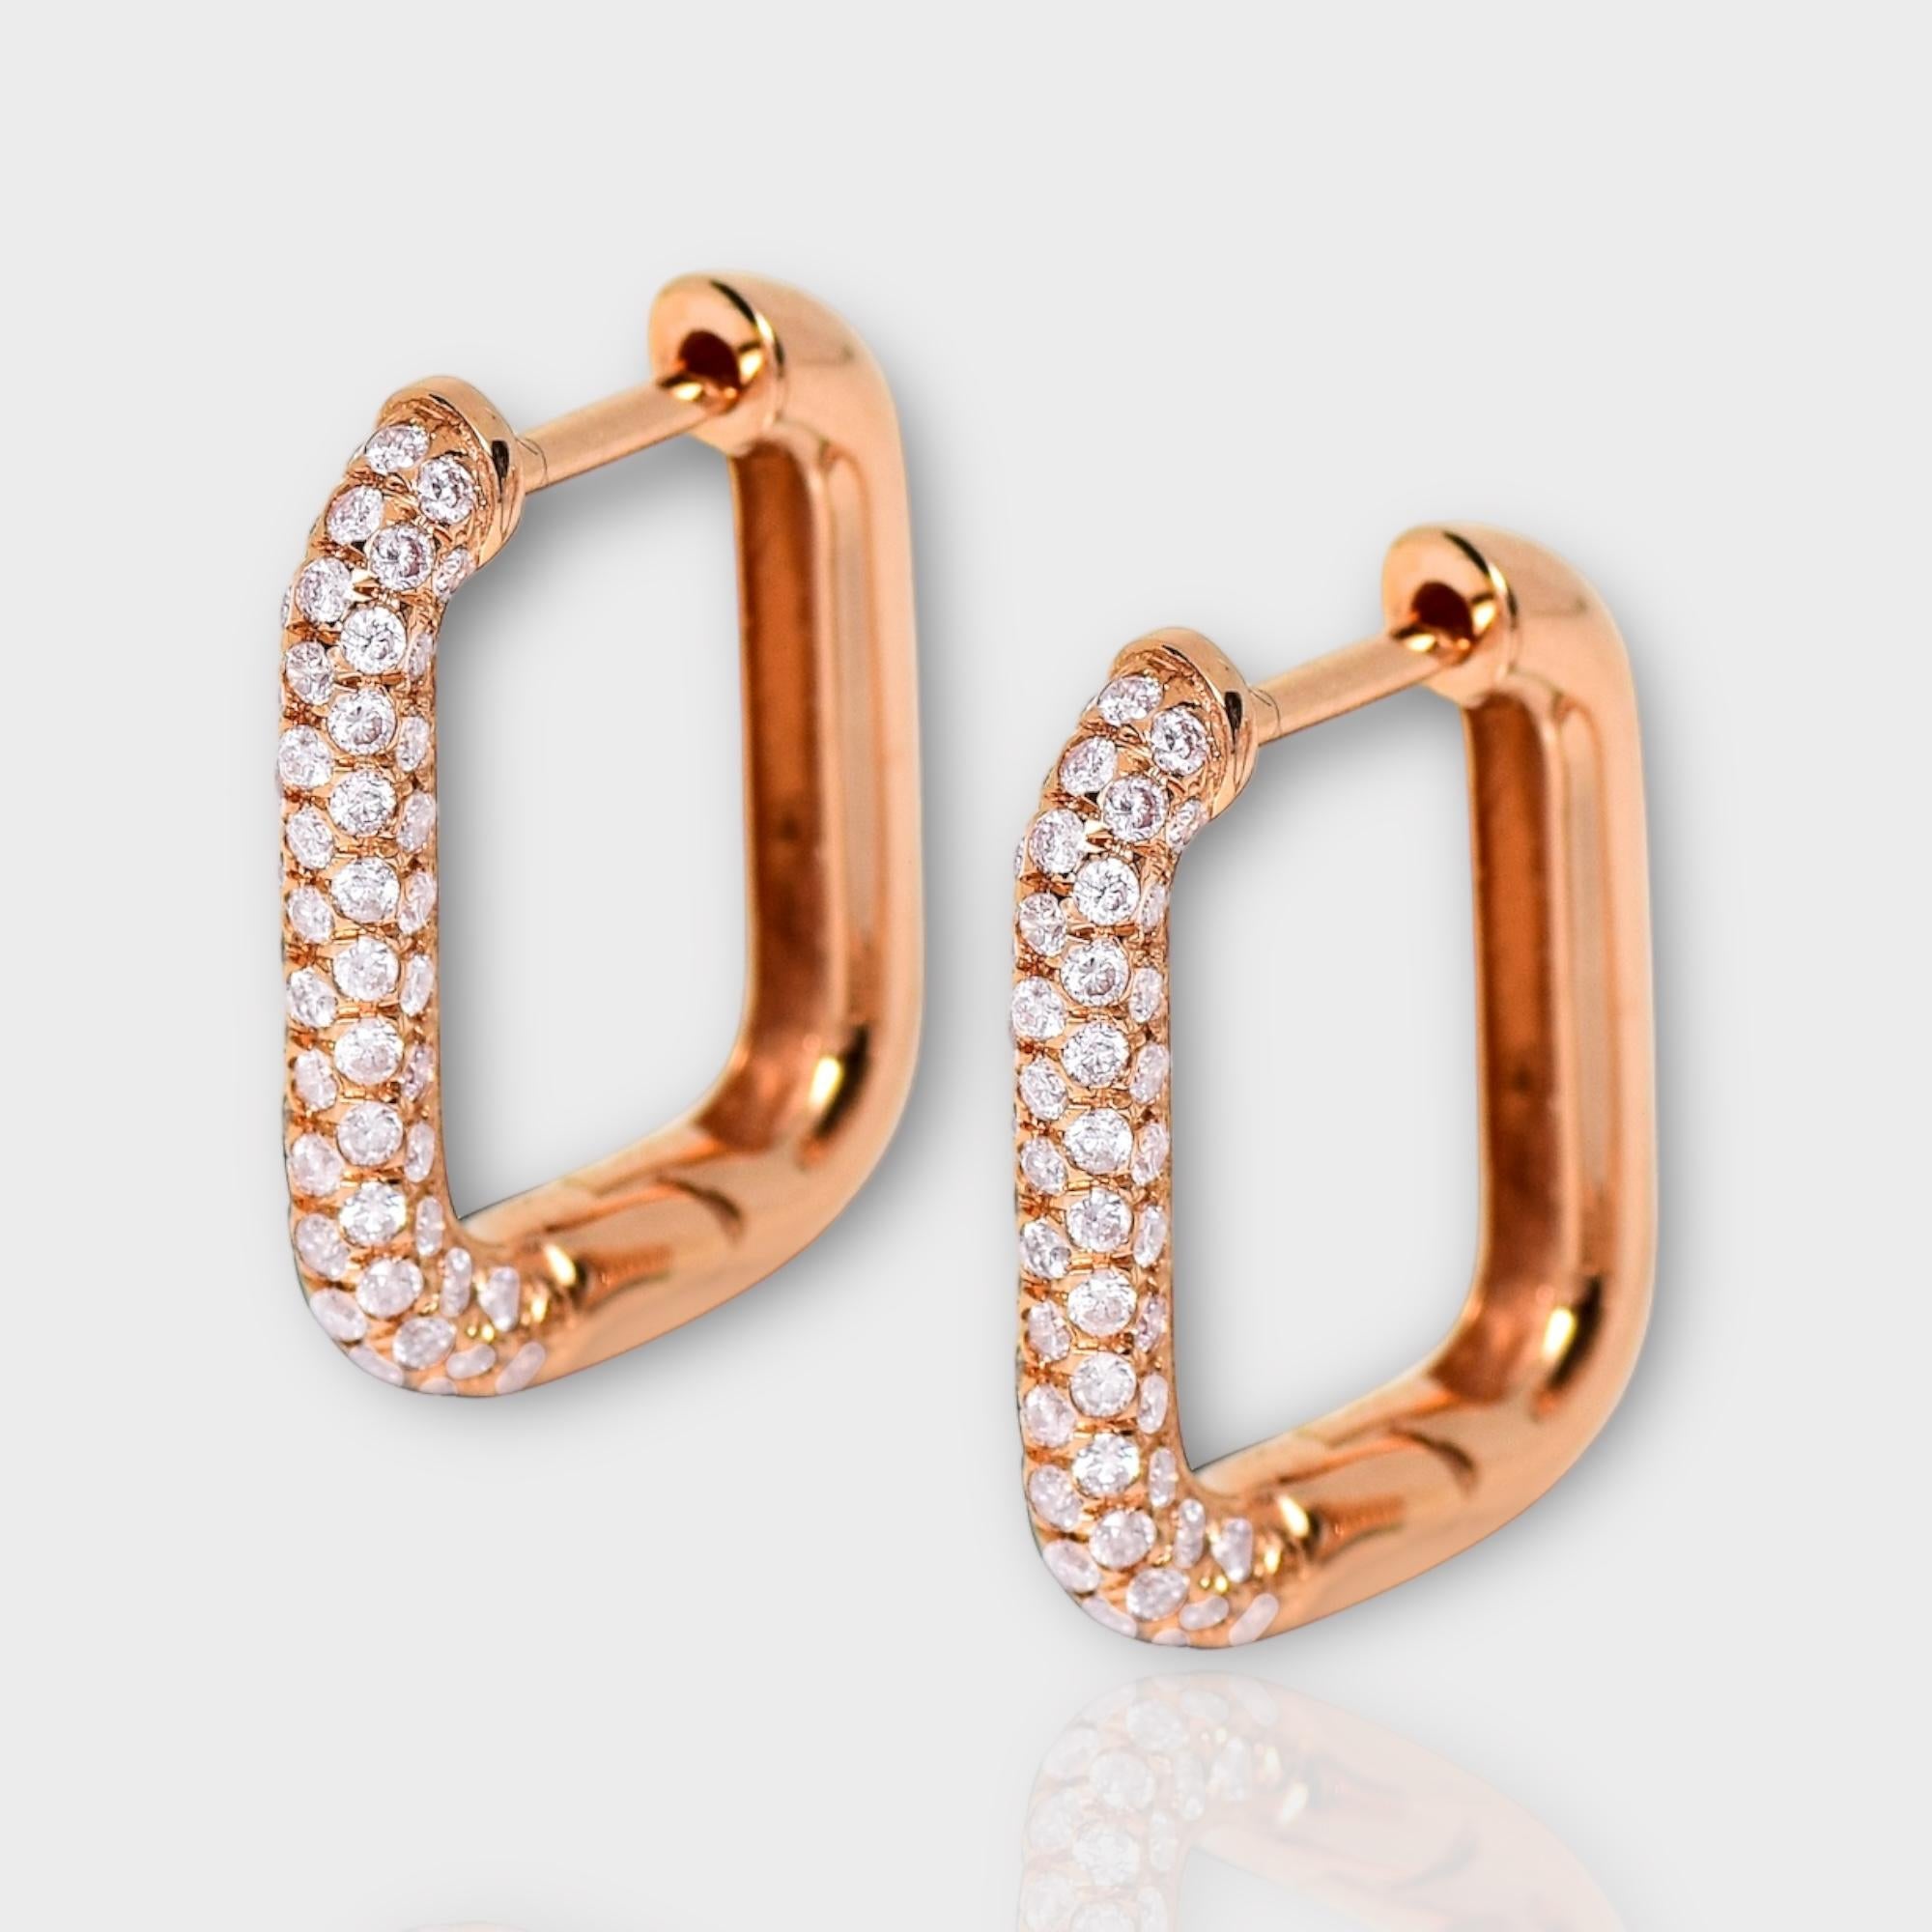 *IGI 14K 0.59 ct Natürliche Rosa Diamanten Hoop Ohrringe*

Dieses Band zeichnet sich durch ein atemberaubendes Design mit einem Reifendesign aus 14K Roségold aus. Er ist mit natürlichen rosa Diamanten von 0.59 Karat besetzt.

Diese Ohrringe mit